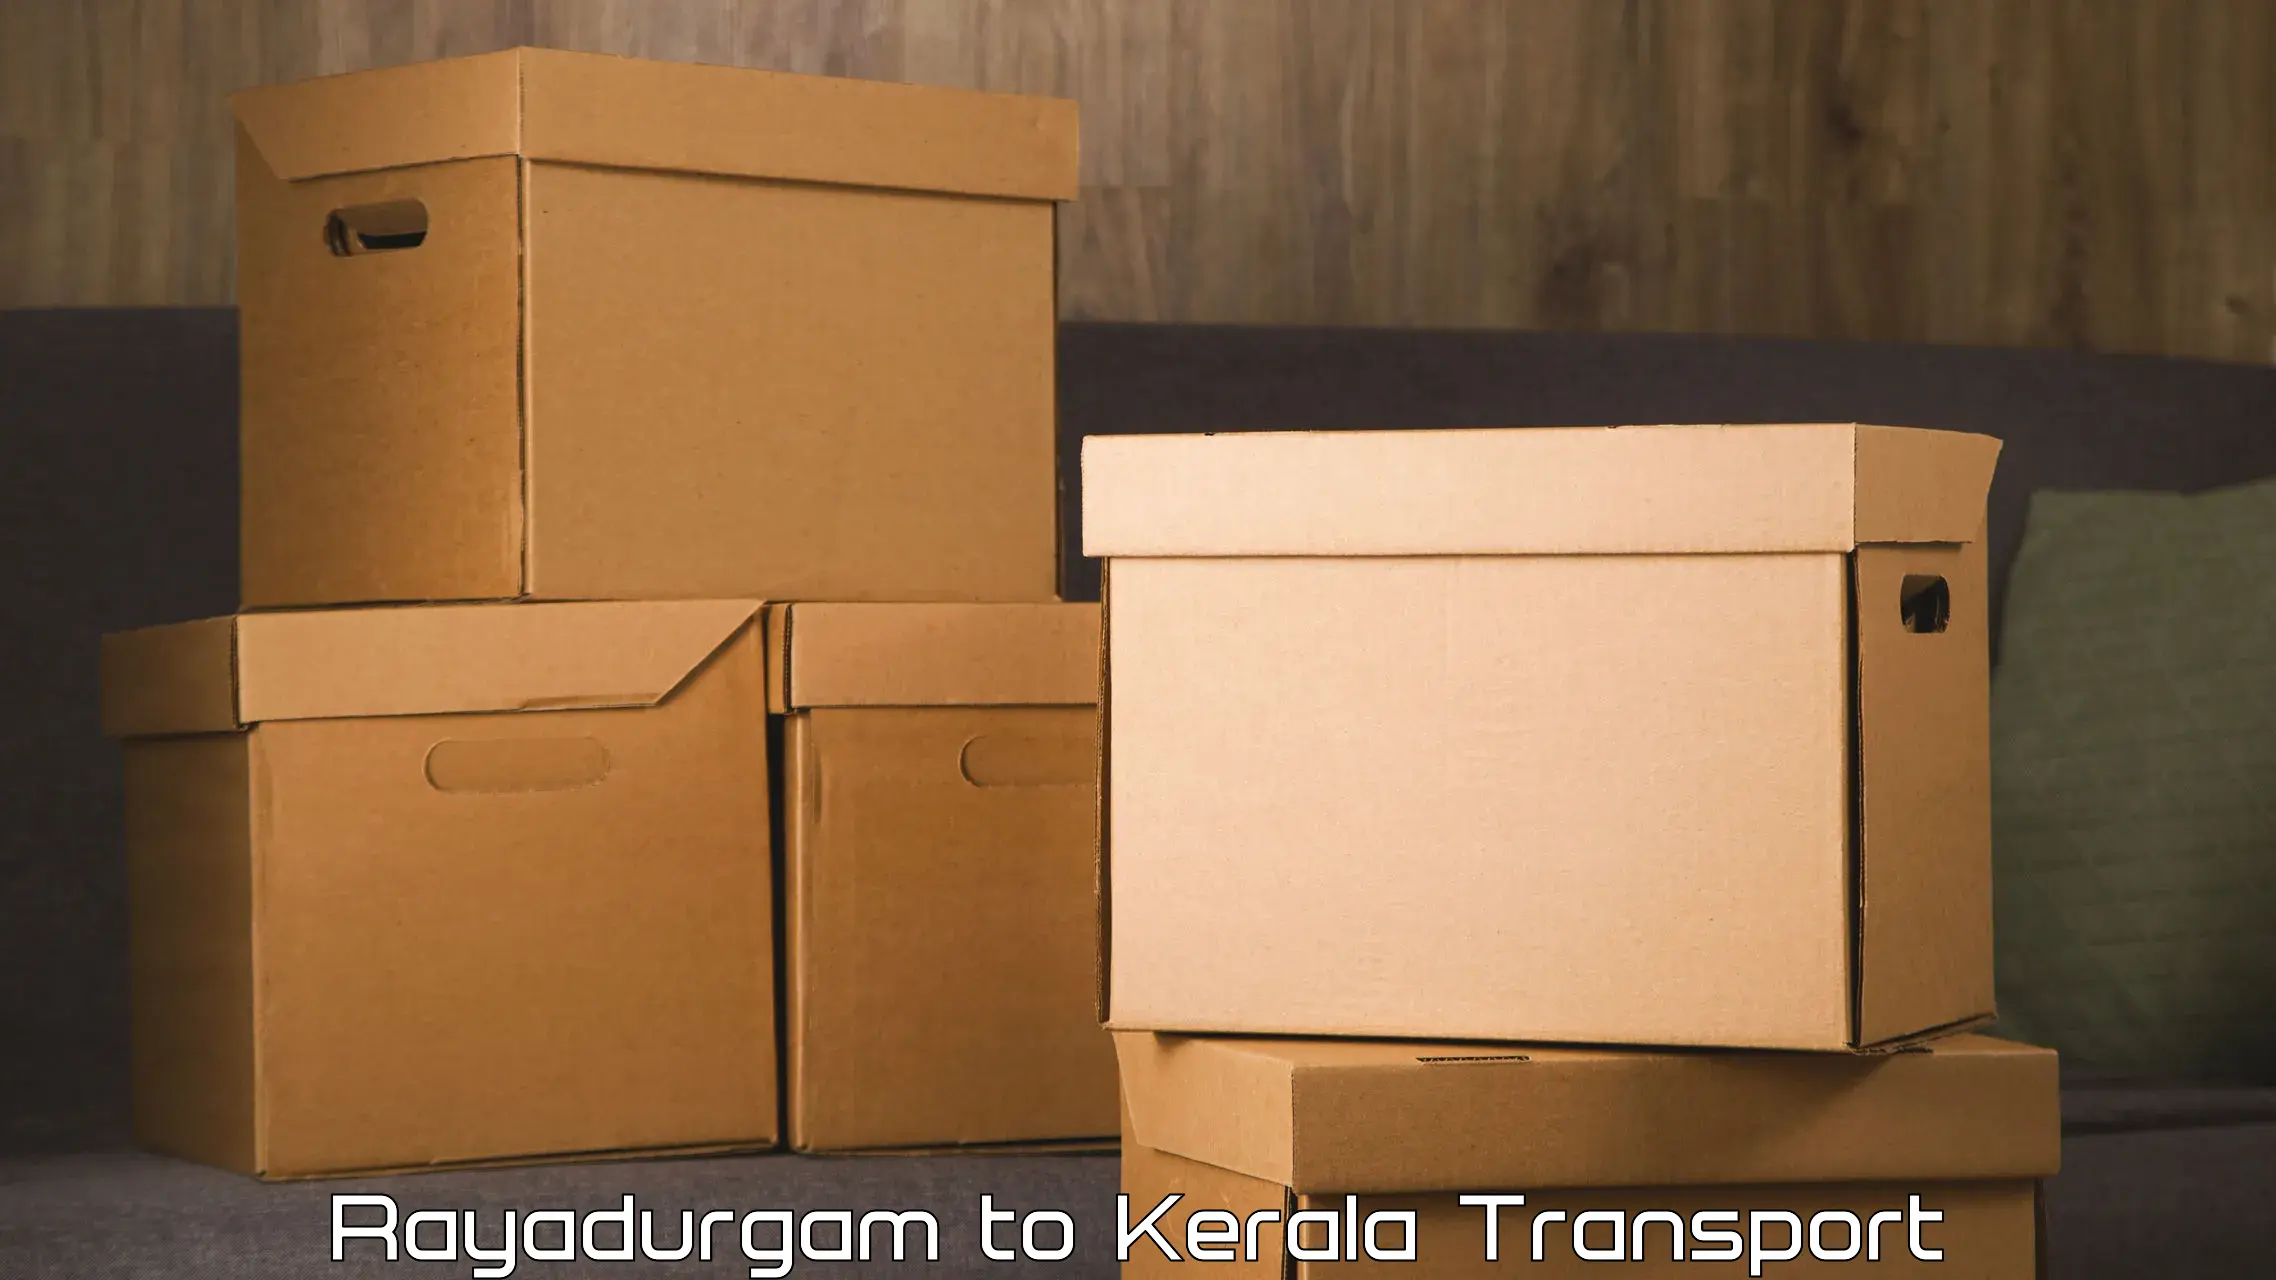 Cargo train transport services Rayadurgam to Thrissur